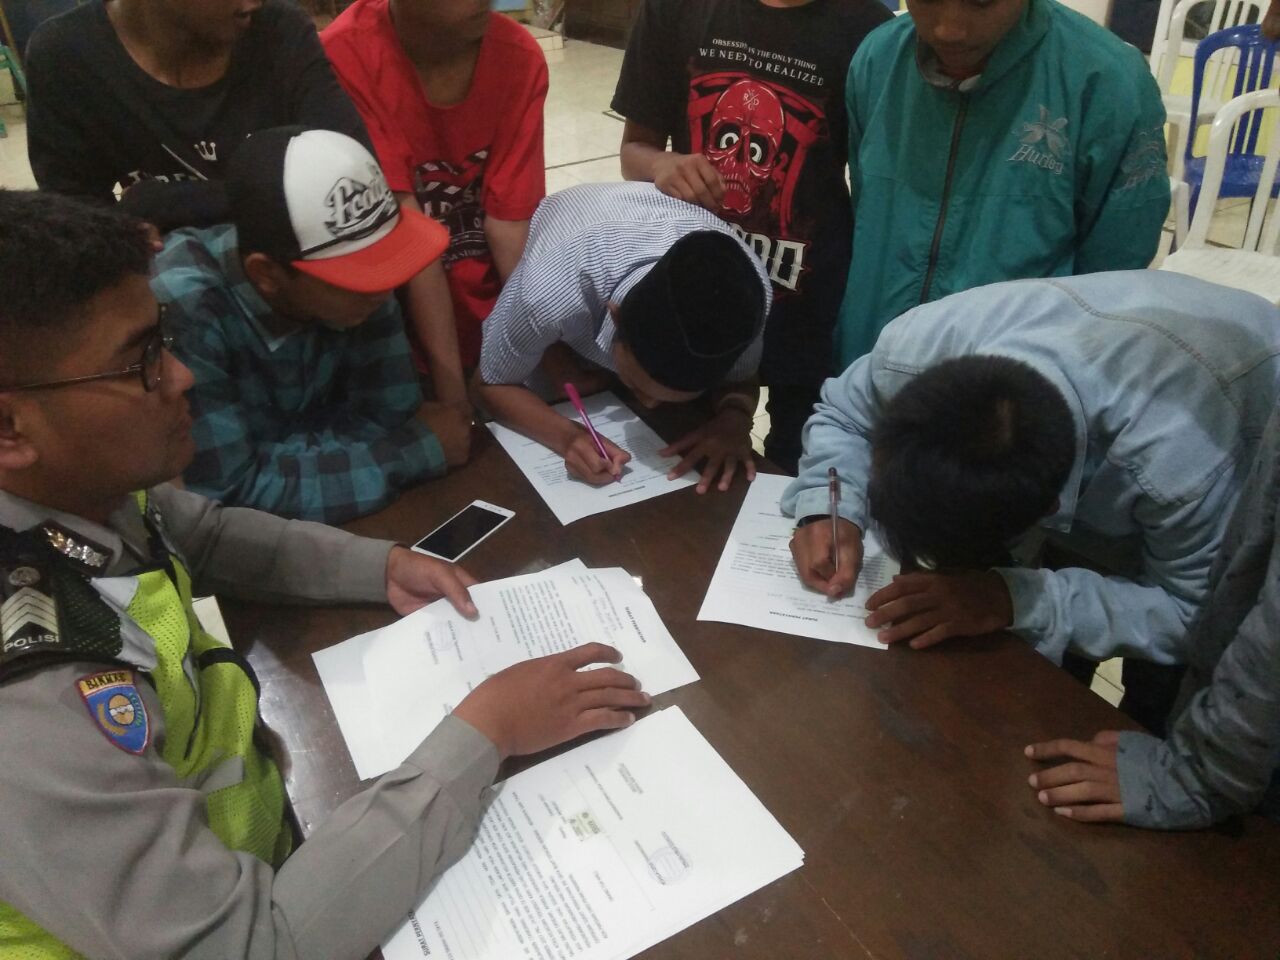 Bhabin Polsek Pujon Polres Batu Bersama Kasun Melakukan Pembinaan Ke Pemuda